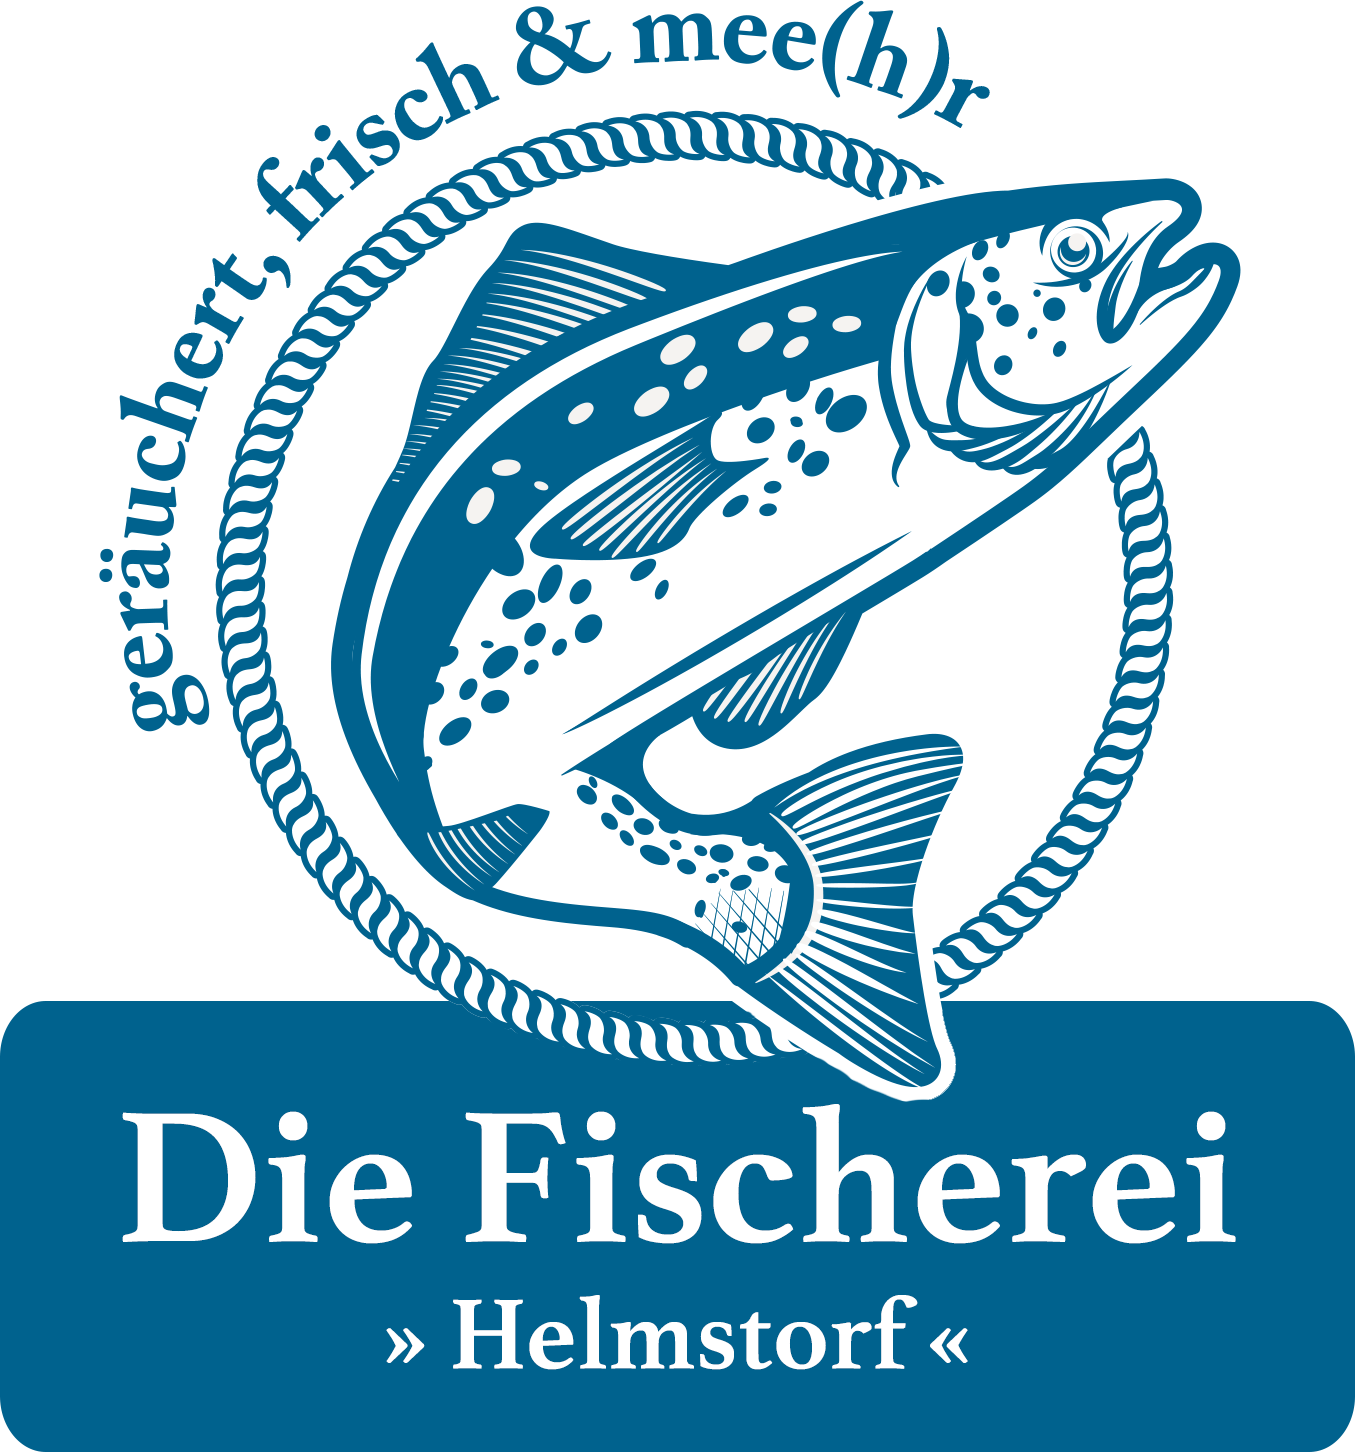 Die Fischerei in Helmstorf - geräuchert, frisch und mee(hr)